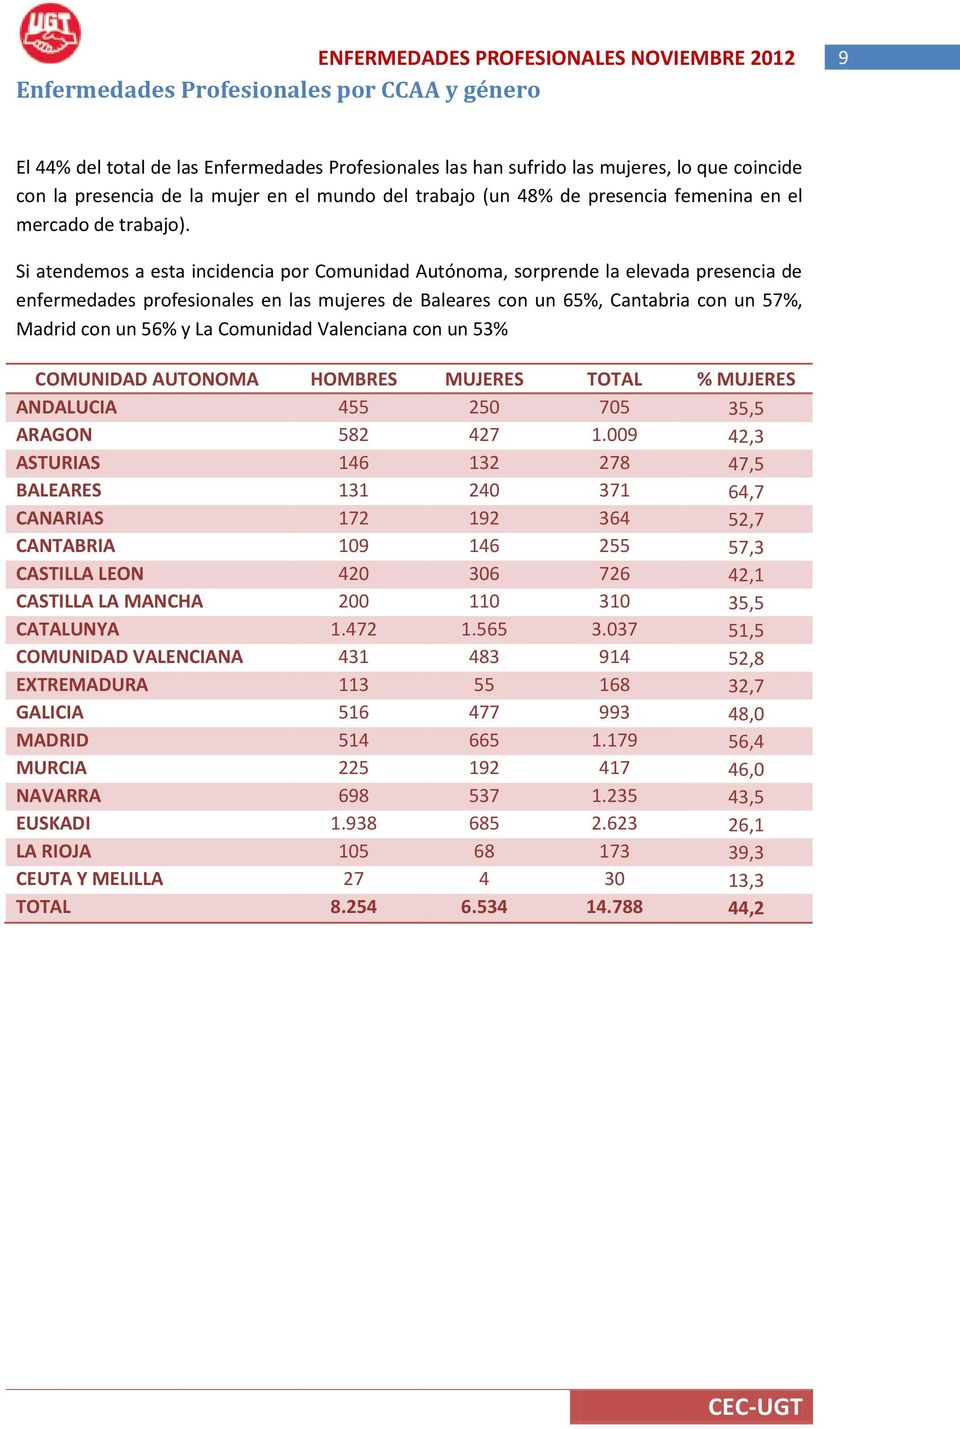 Si atendemos a esta incidencia por Comunidad Autónoma, sorprende la elevada presencia de enfermedades profesionales en las mujeres de Baleares con un 65%, Cantabria con un 57%, Madrid con un 56% y La